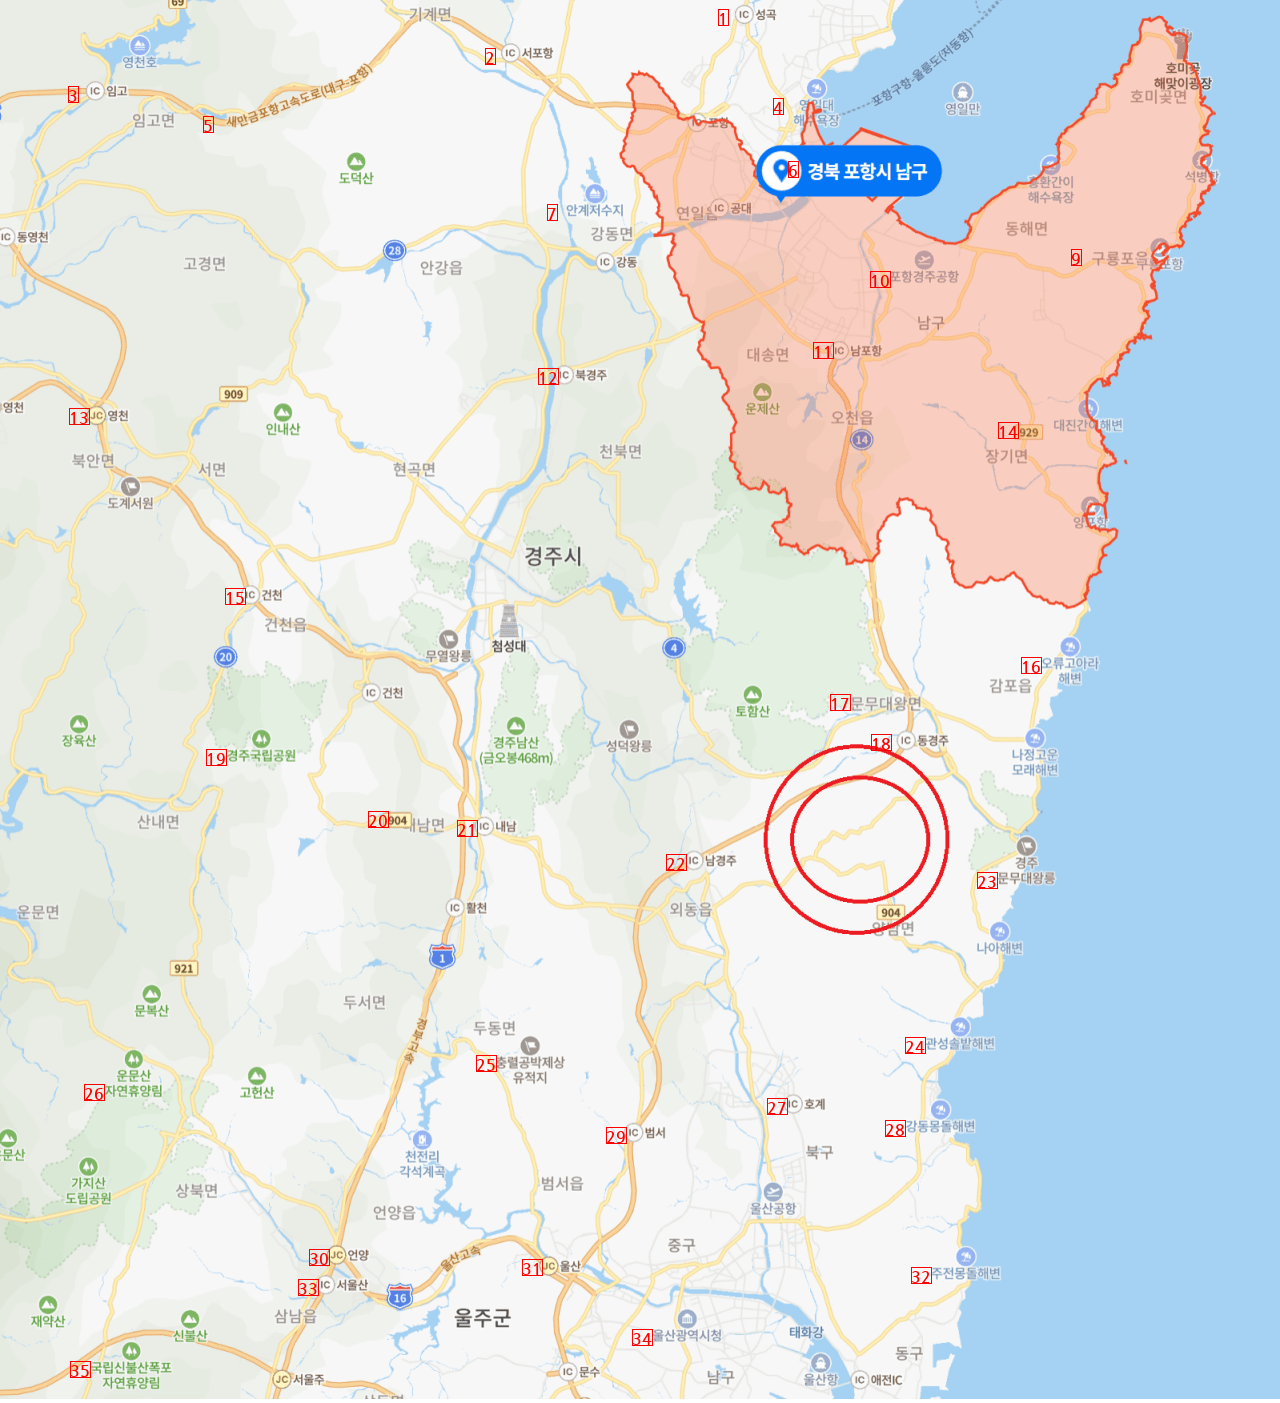 現在慶州40地震地震マップ震源地など